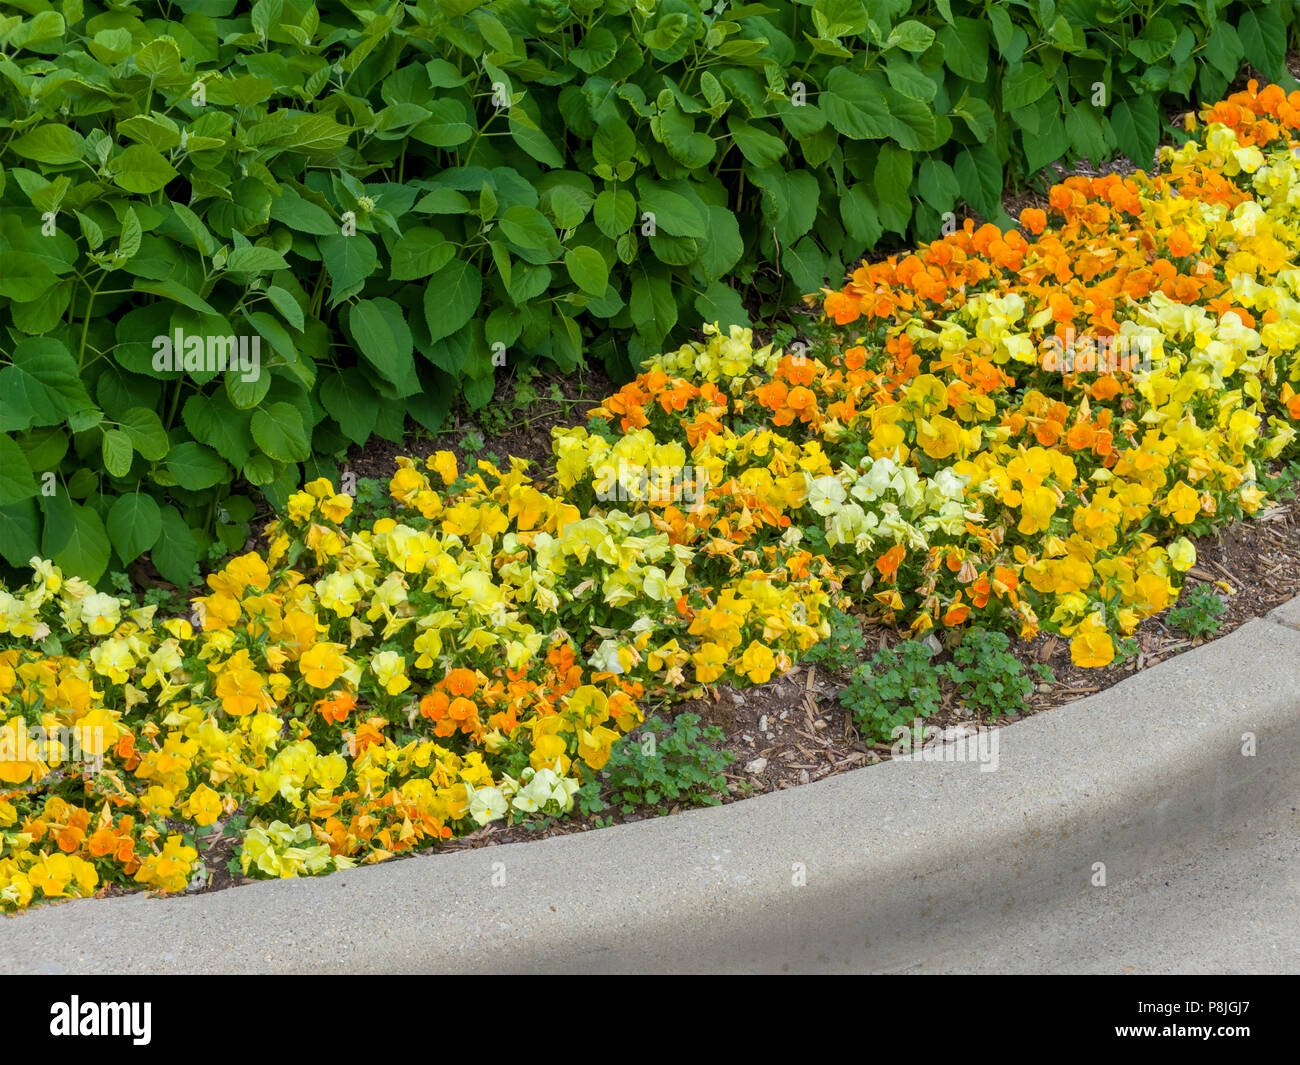 Bunte Farben Gelb und Orange Blume Grenze mit frischen Frühling blühende  Bodendecker unter grünen Sträuchern in einer konkreten Surround  Stockfotografie - Alamy